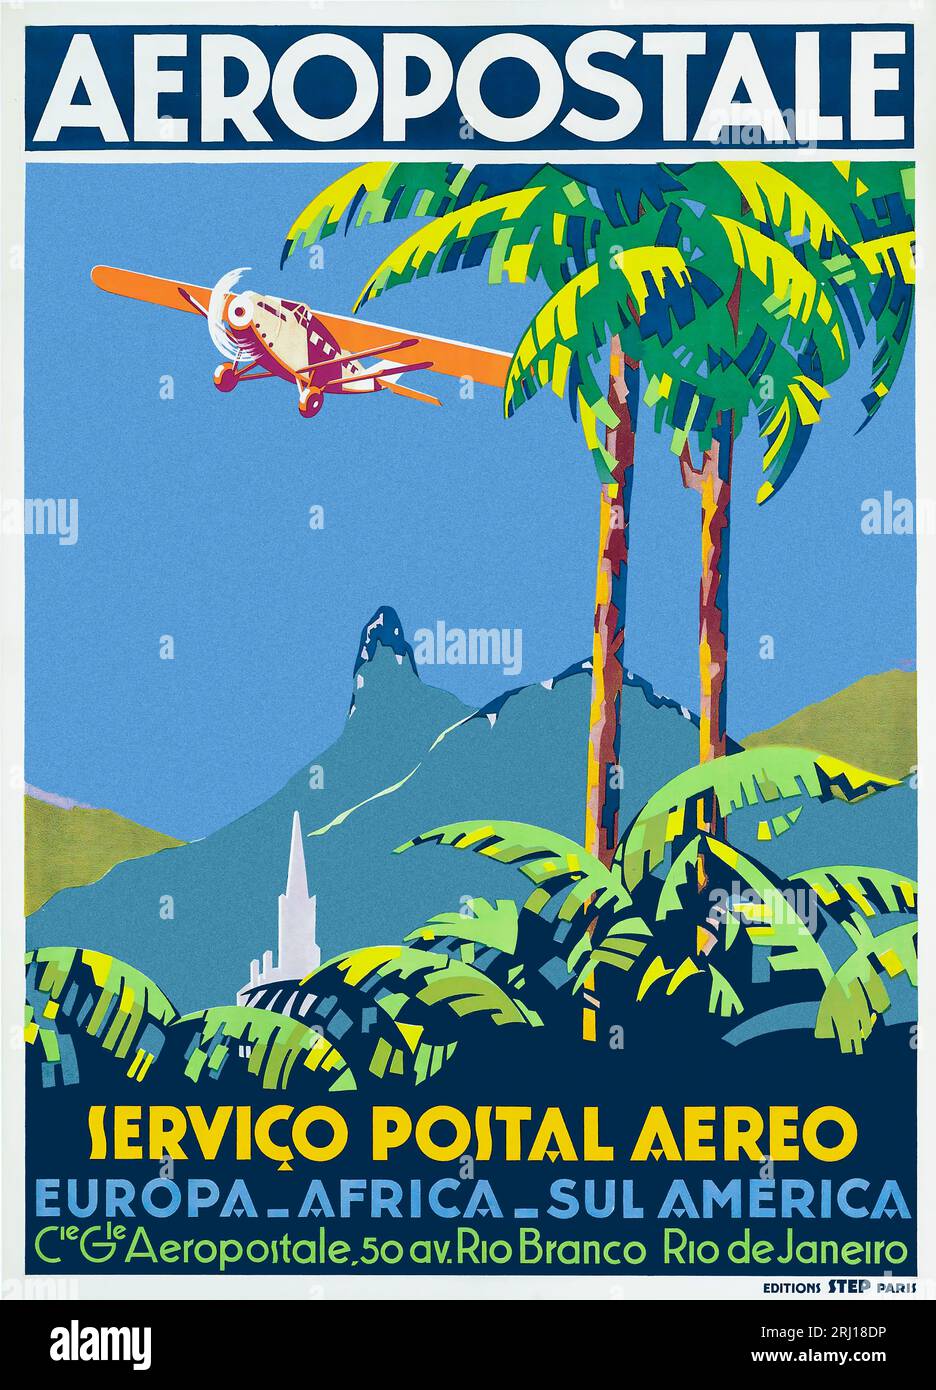 Vintage Aeropostale Air Mail affiche du service postal pour l'Europe, l'Afrique et l'Amérique du Sud Banque D'Images